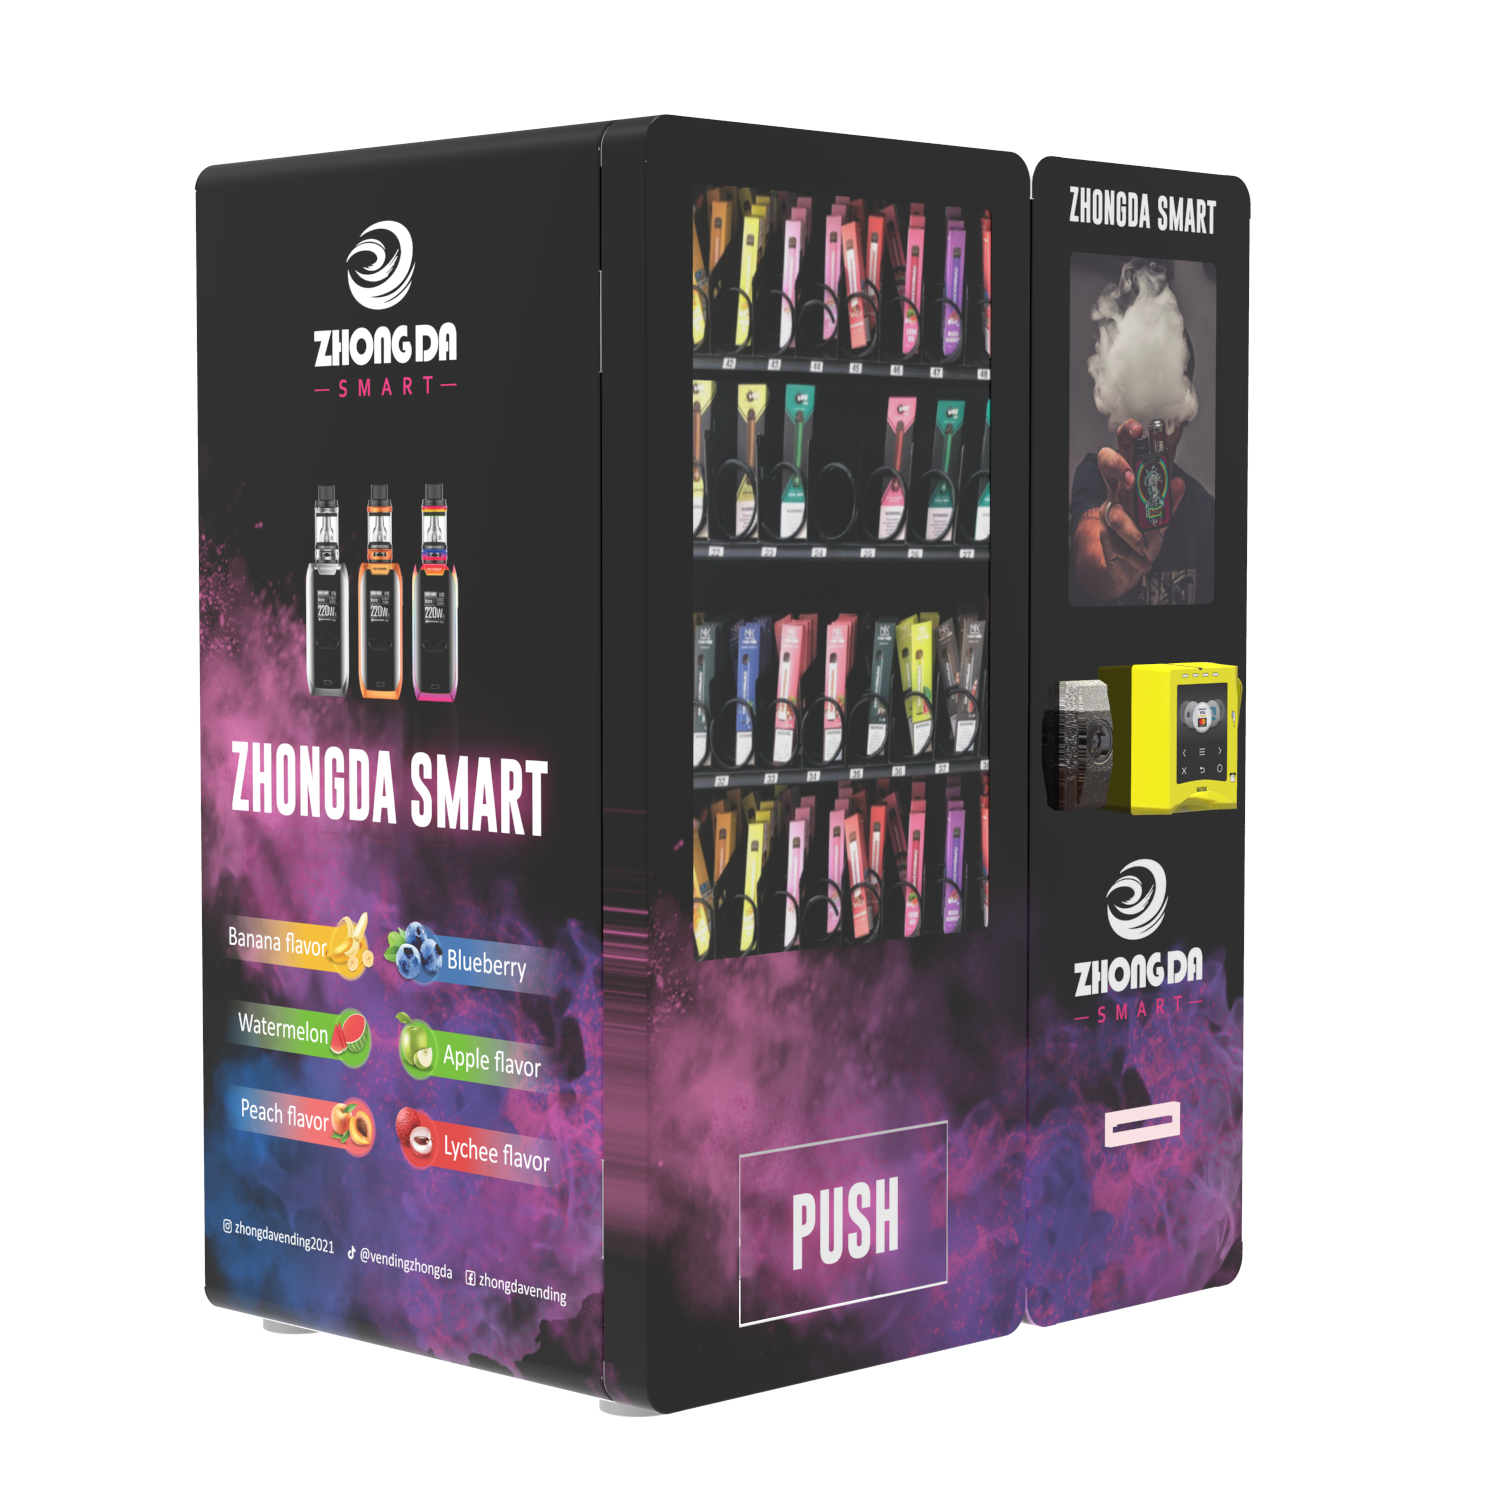 10.1 inch touch screen mini vending machine web version e-cigarettes e-cigarettes vape vaping vending